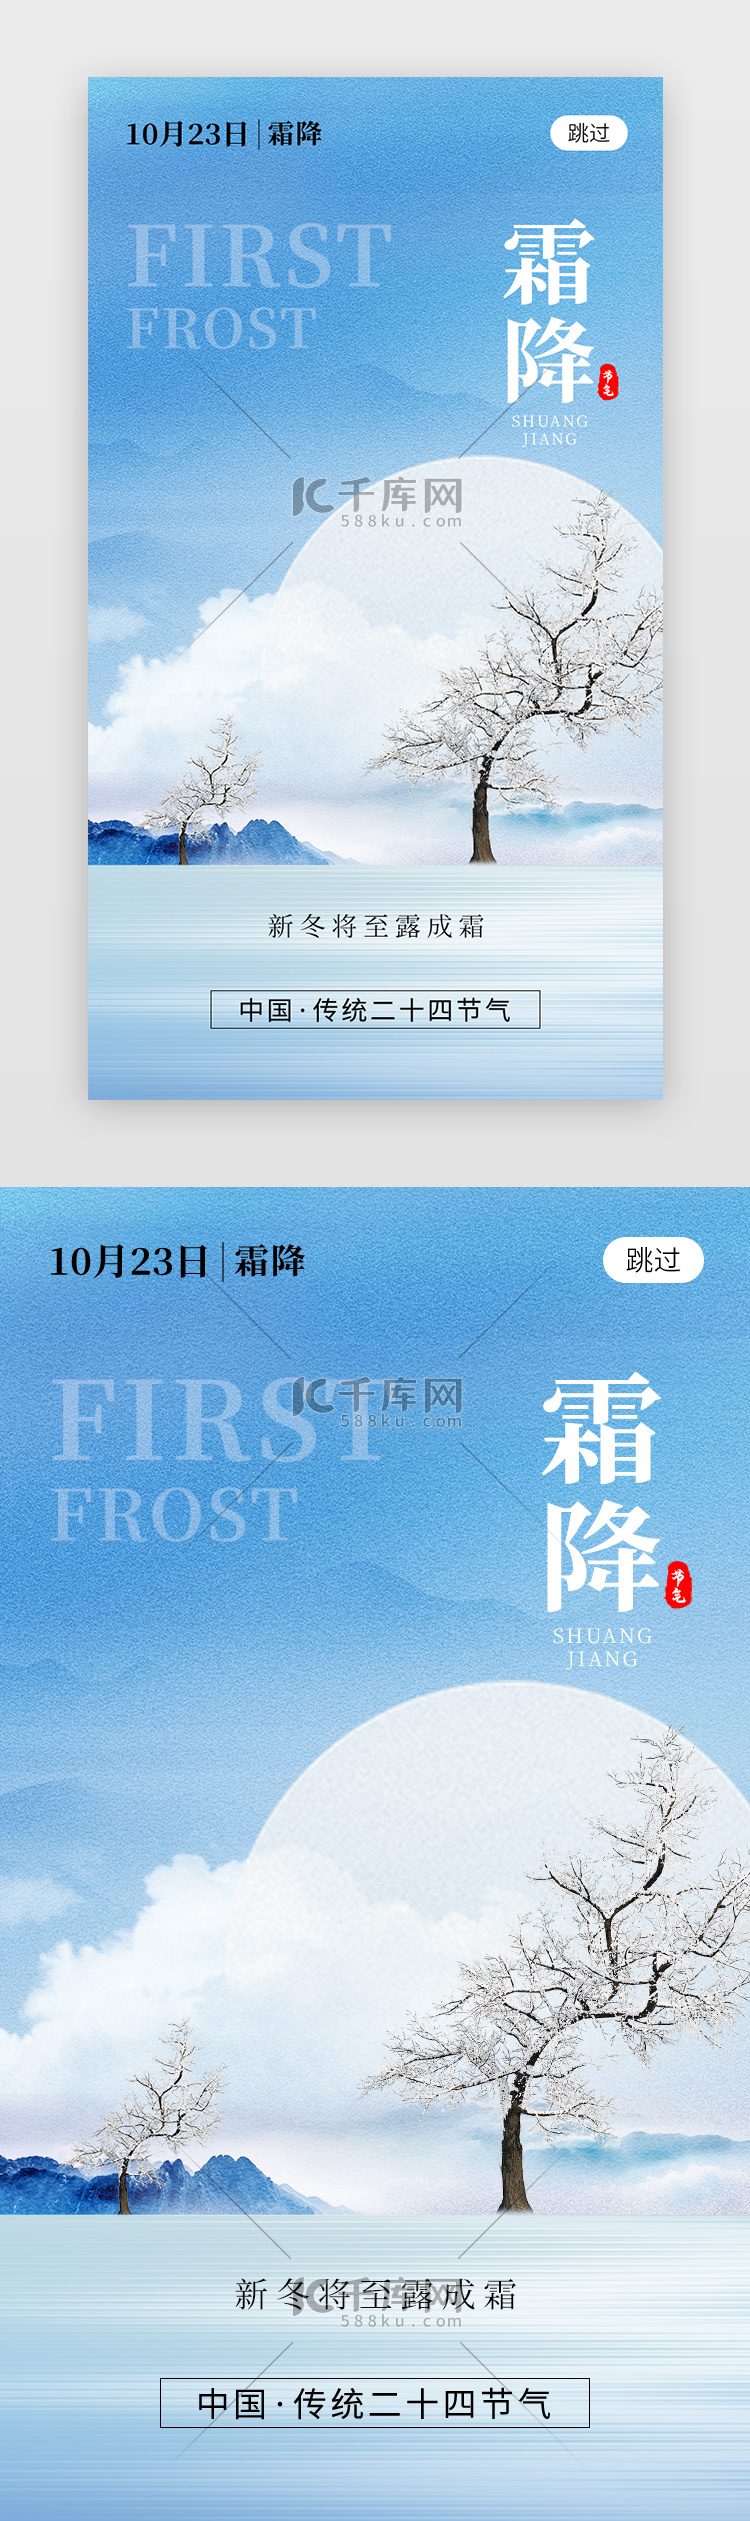 二十四节气霜降app闪屏创意蓝色松树